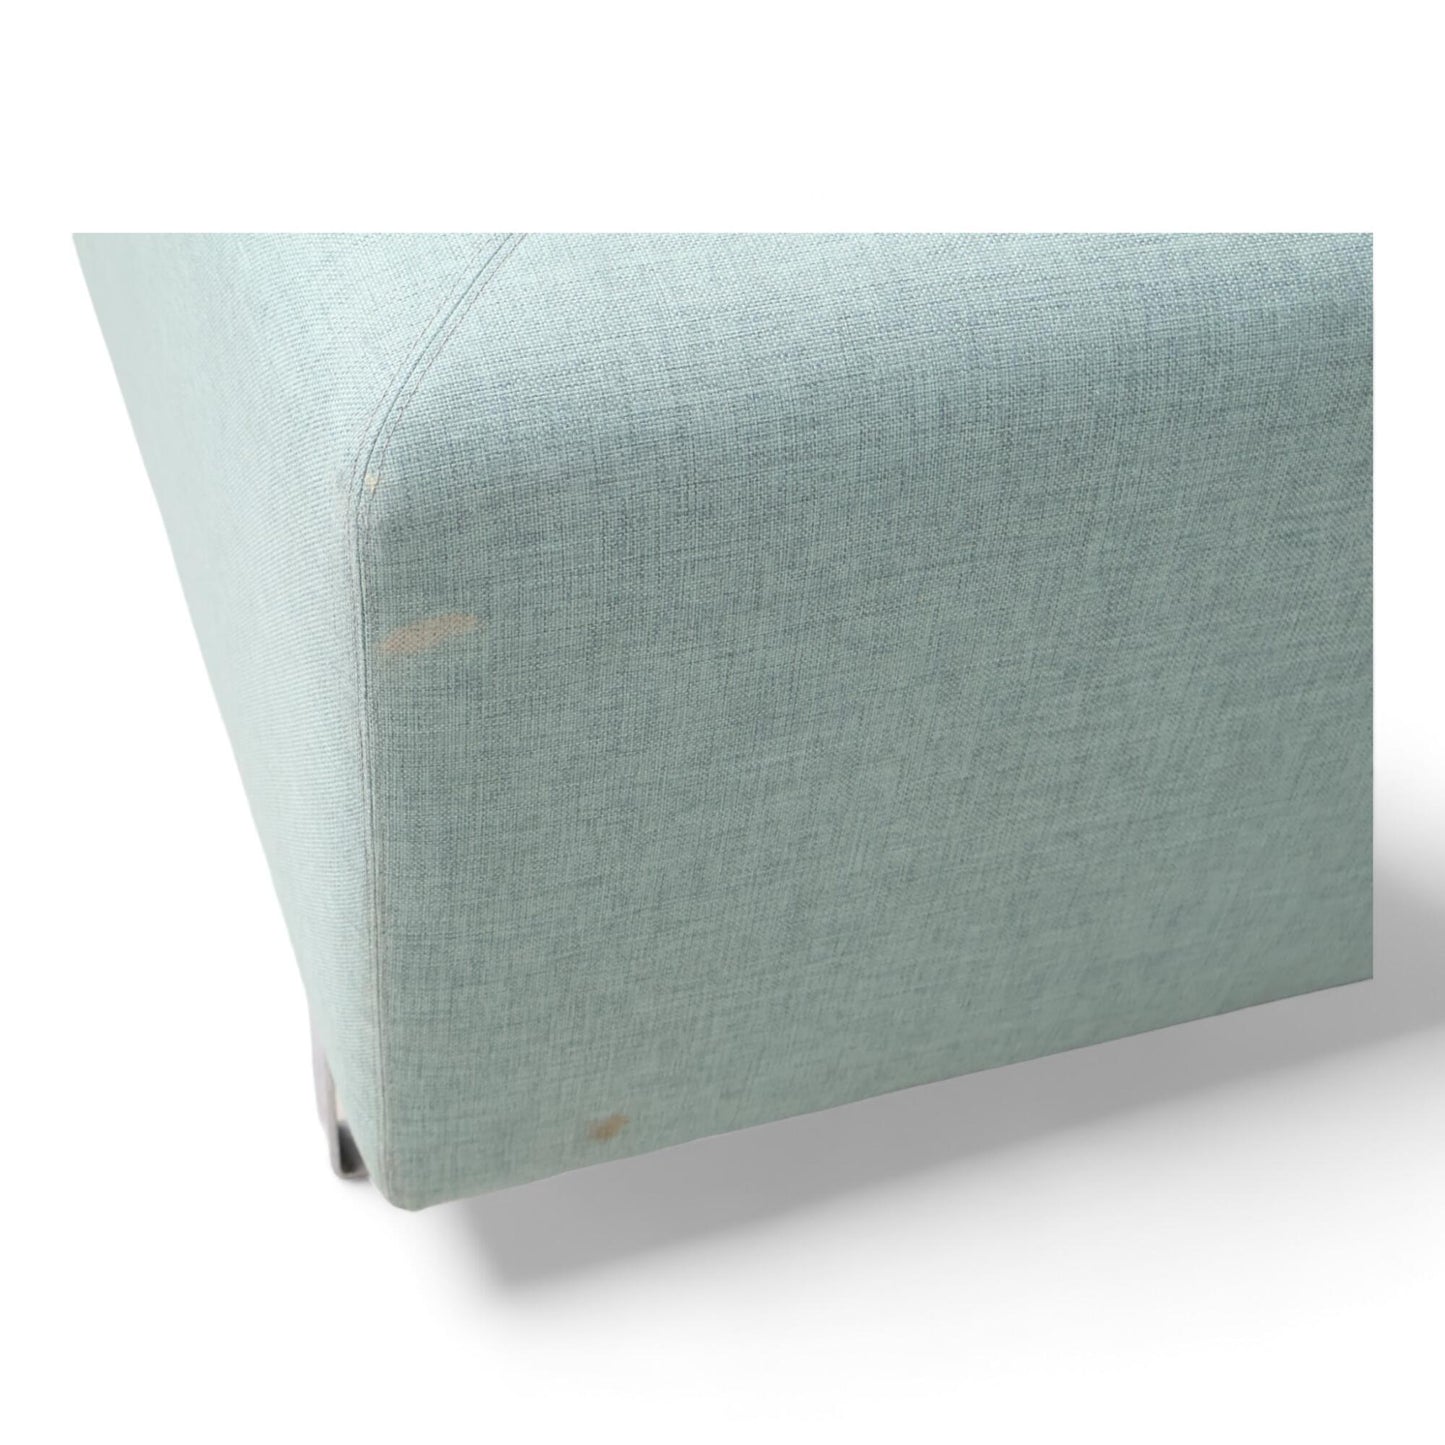 Nyrenset | Mintgrønn Bolia Seville sofa med sjeselong